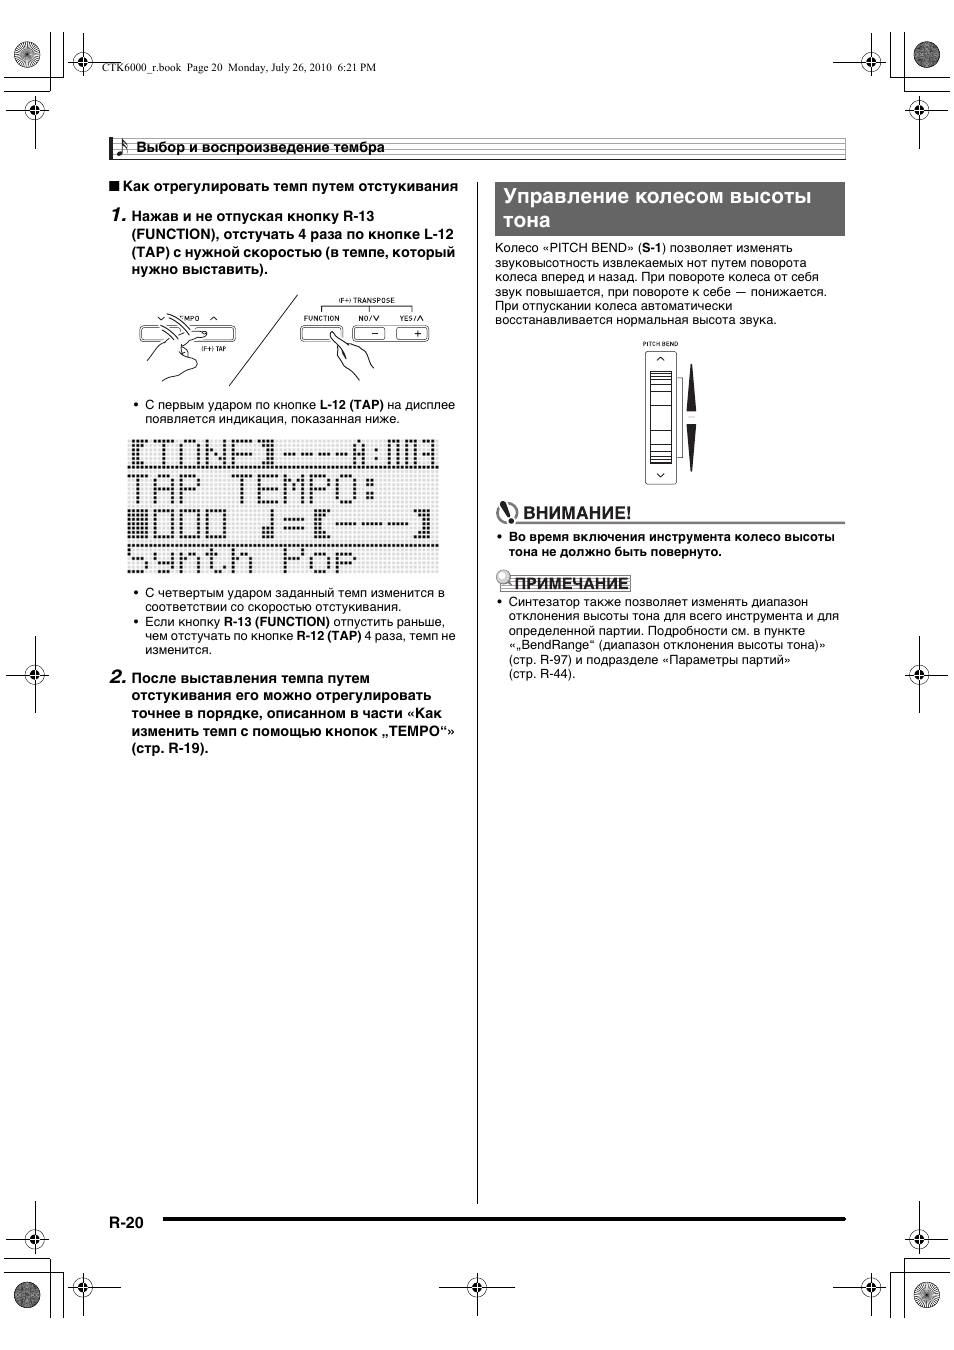 Управление колесом высоты тона | Инструкция по эксплуатации Casio CTK-6000 | Страница 21 / 131